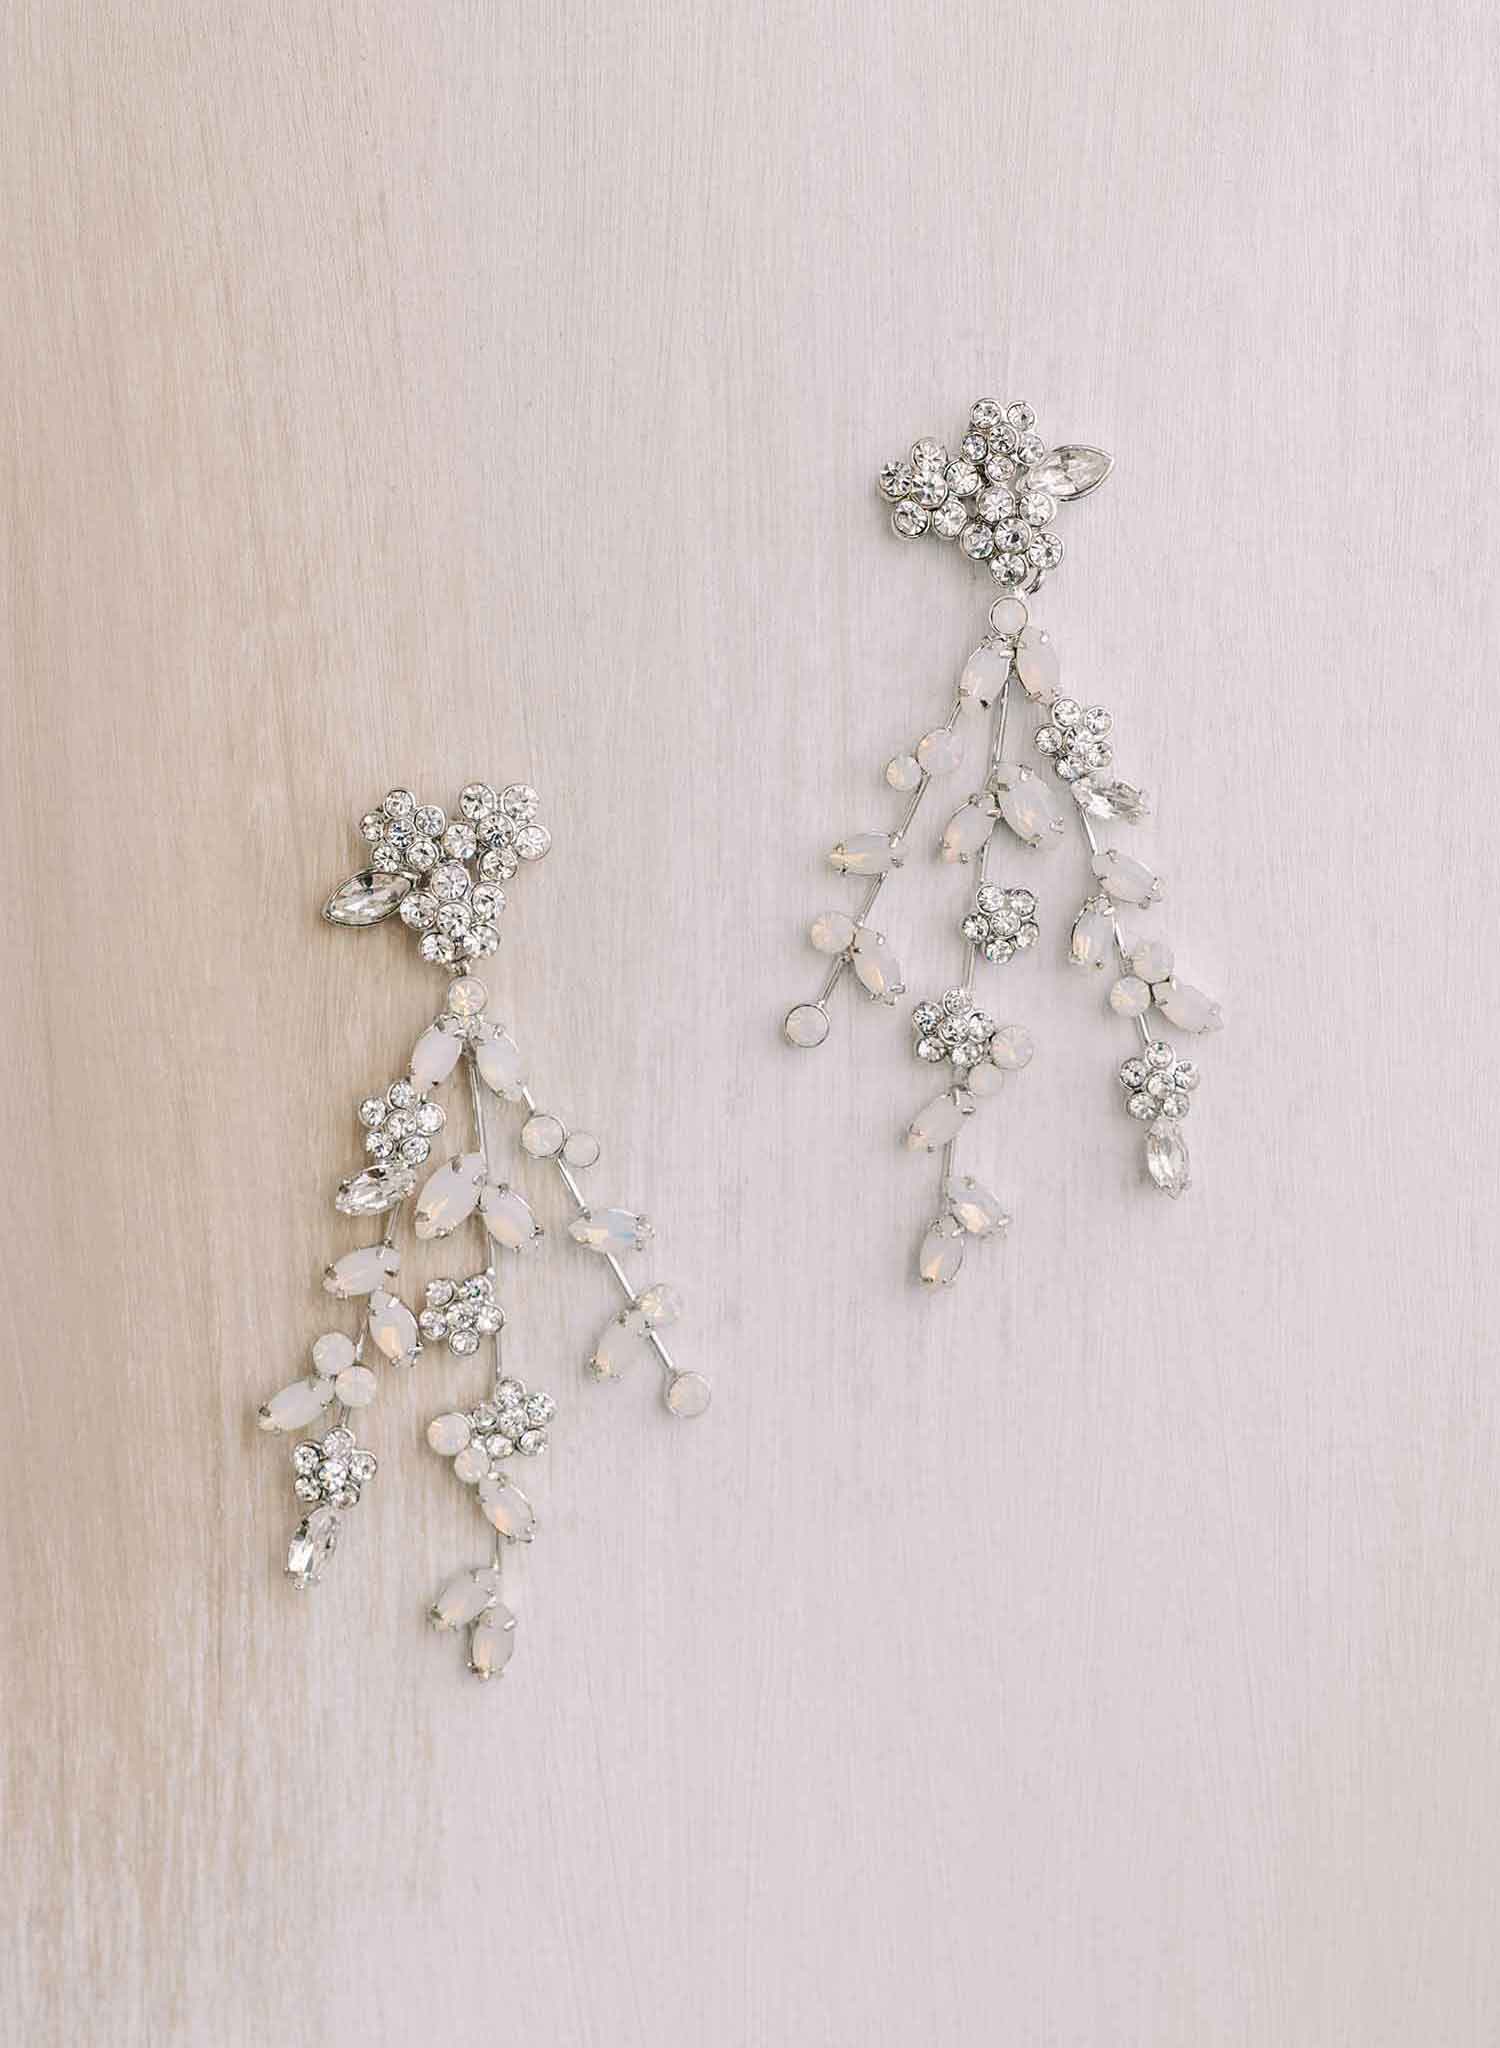 Triple strand crystal chandelier earrings - Style #2146